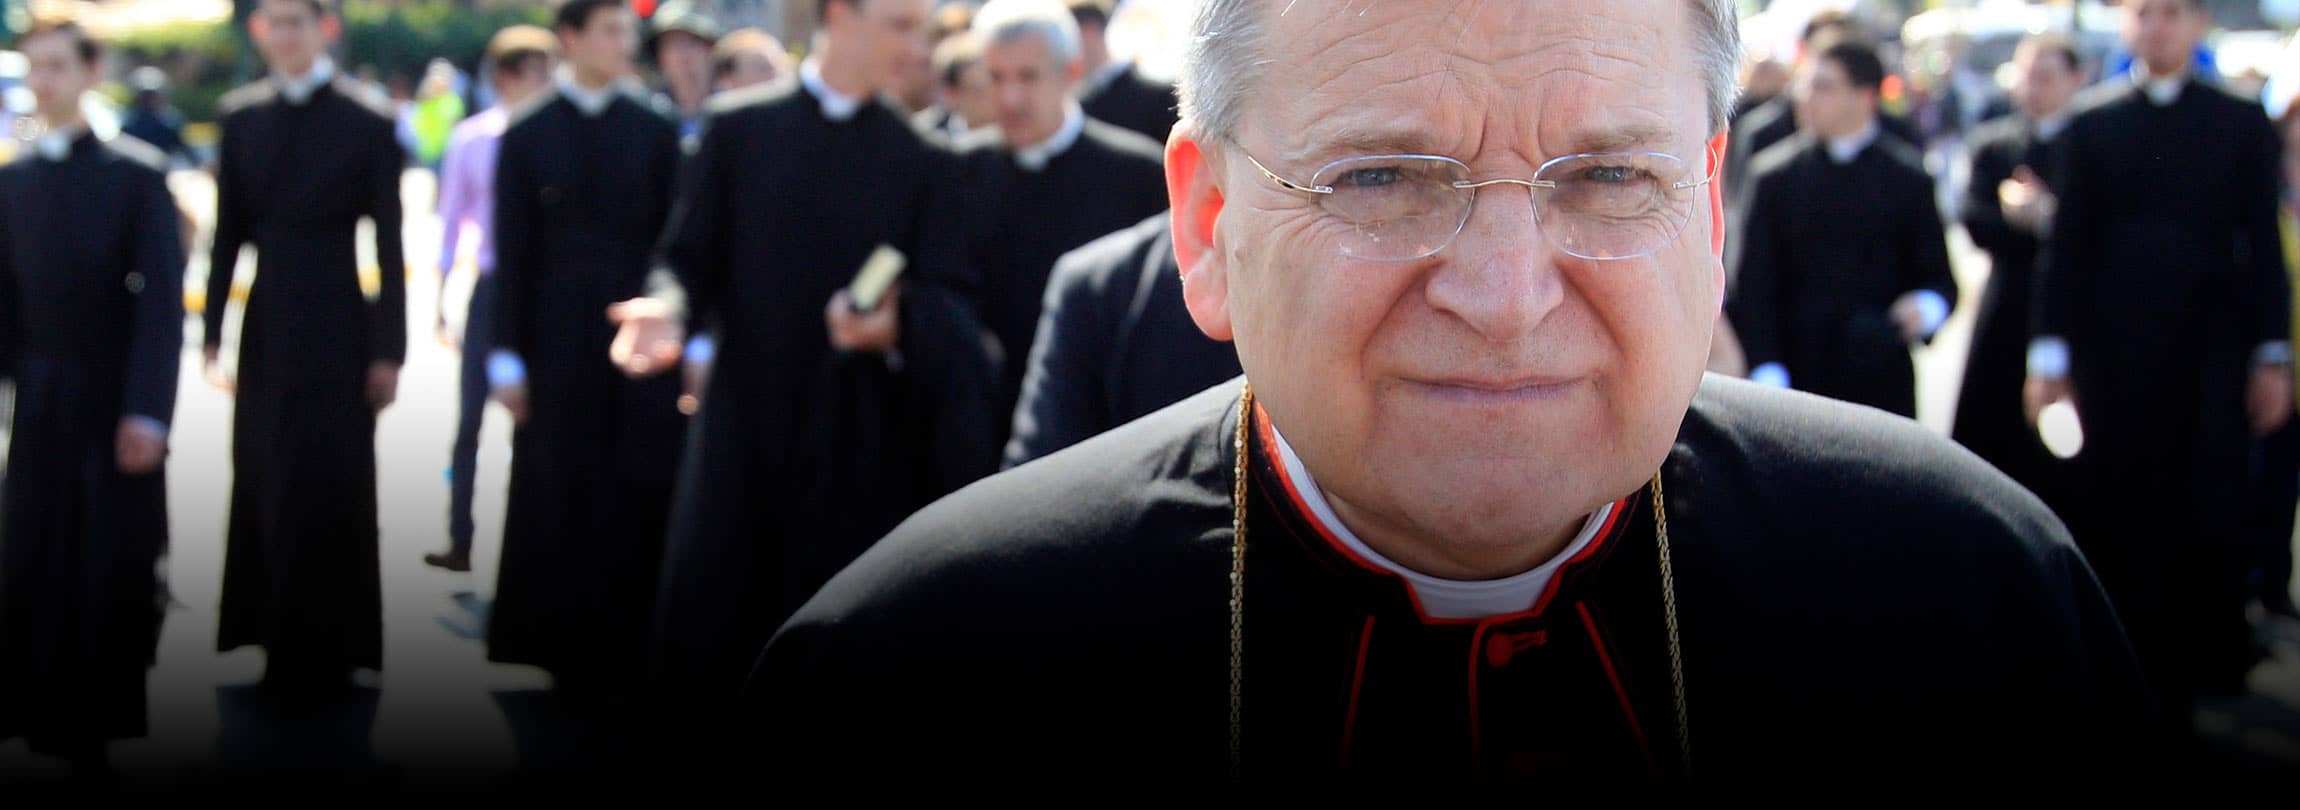 Cardeal Burke: a Liturgia "não é invenção humana, mas um presente de Deus para nós"